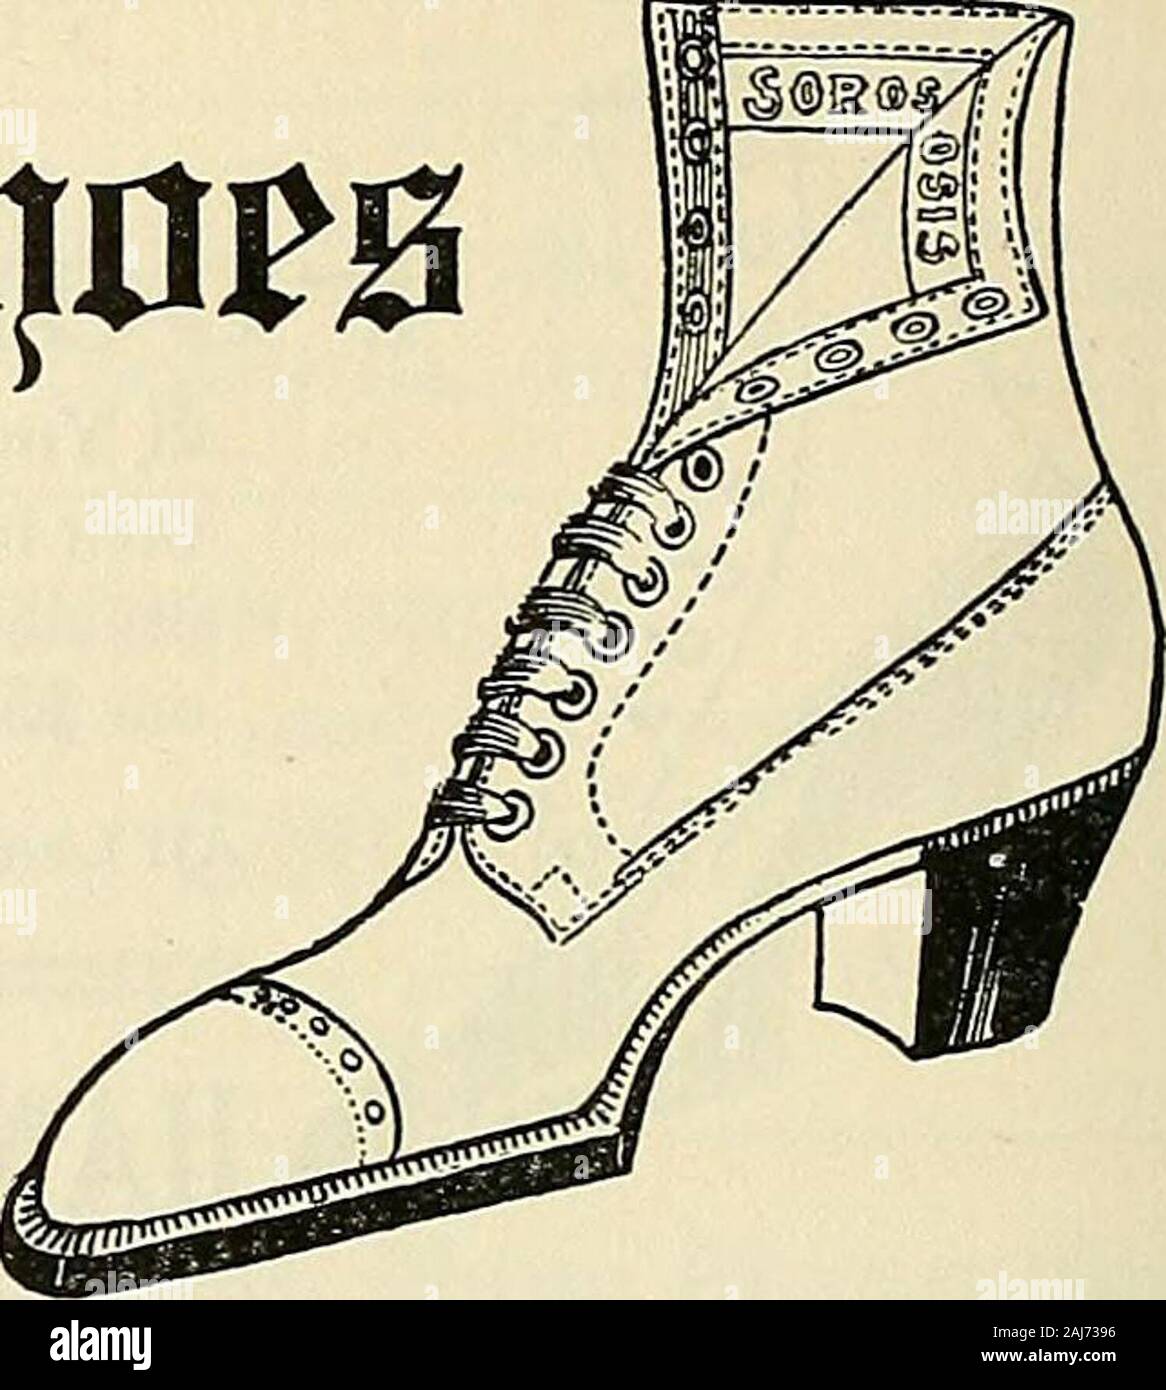 Tipyn o'bob, 1906-1907 . mam &m% C Sorosis formas están originaland son el  estándar aceptado de que la mayoría de zapatos aremodeled.. A Importadores  de calcetería coste. Tiendas, 1312-1314 Chestnut Street Bailey,